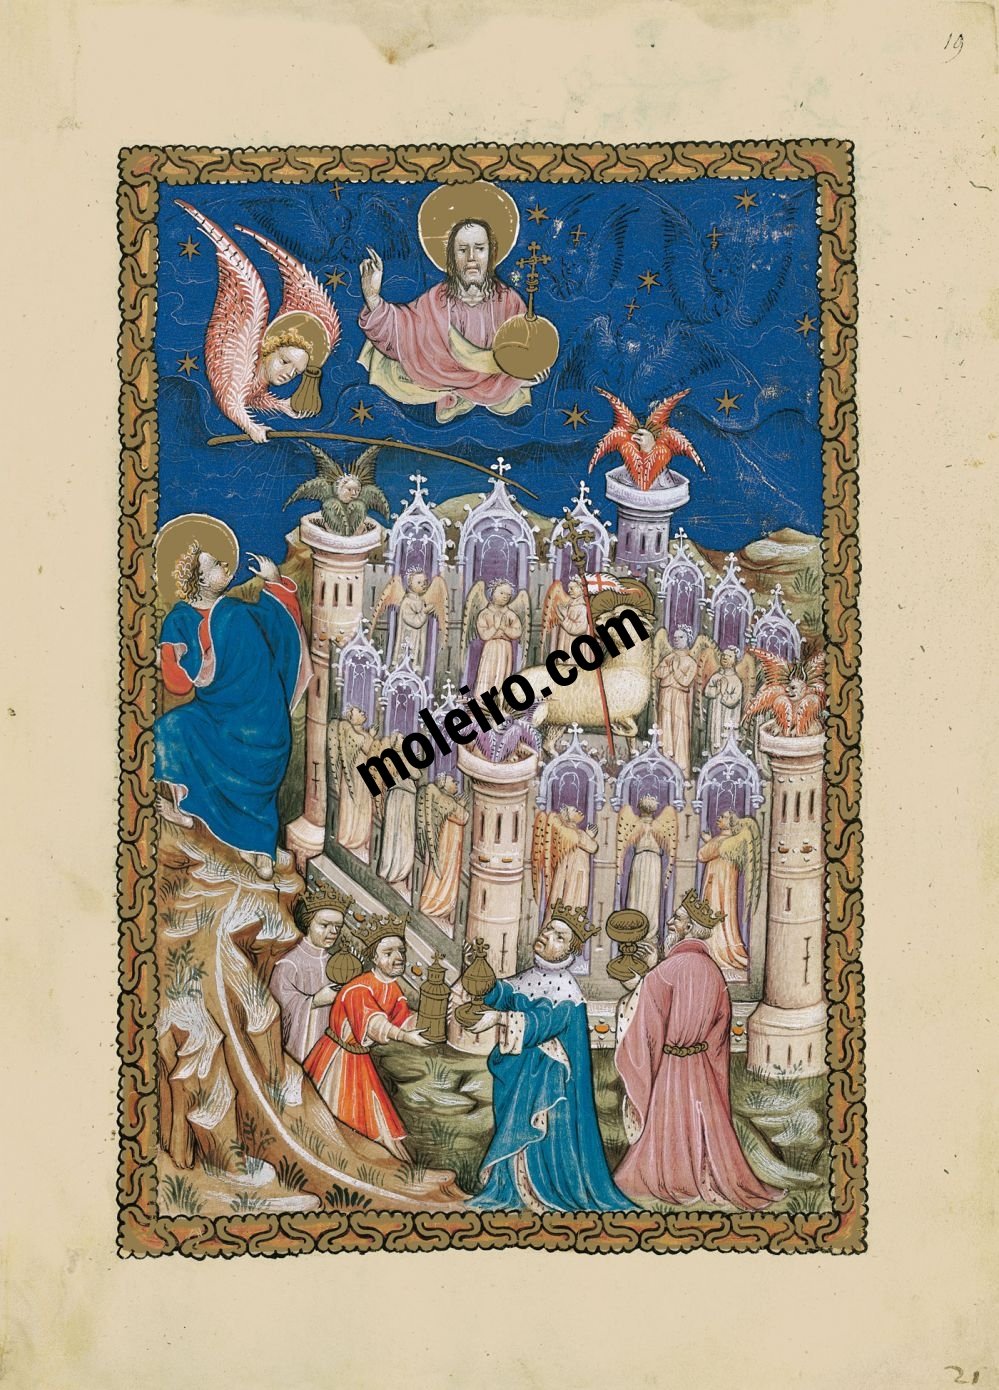 Flämische Apokalypse f. 19r, Das Neue Jerusalem